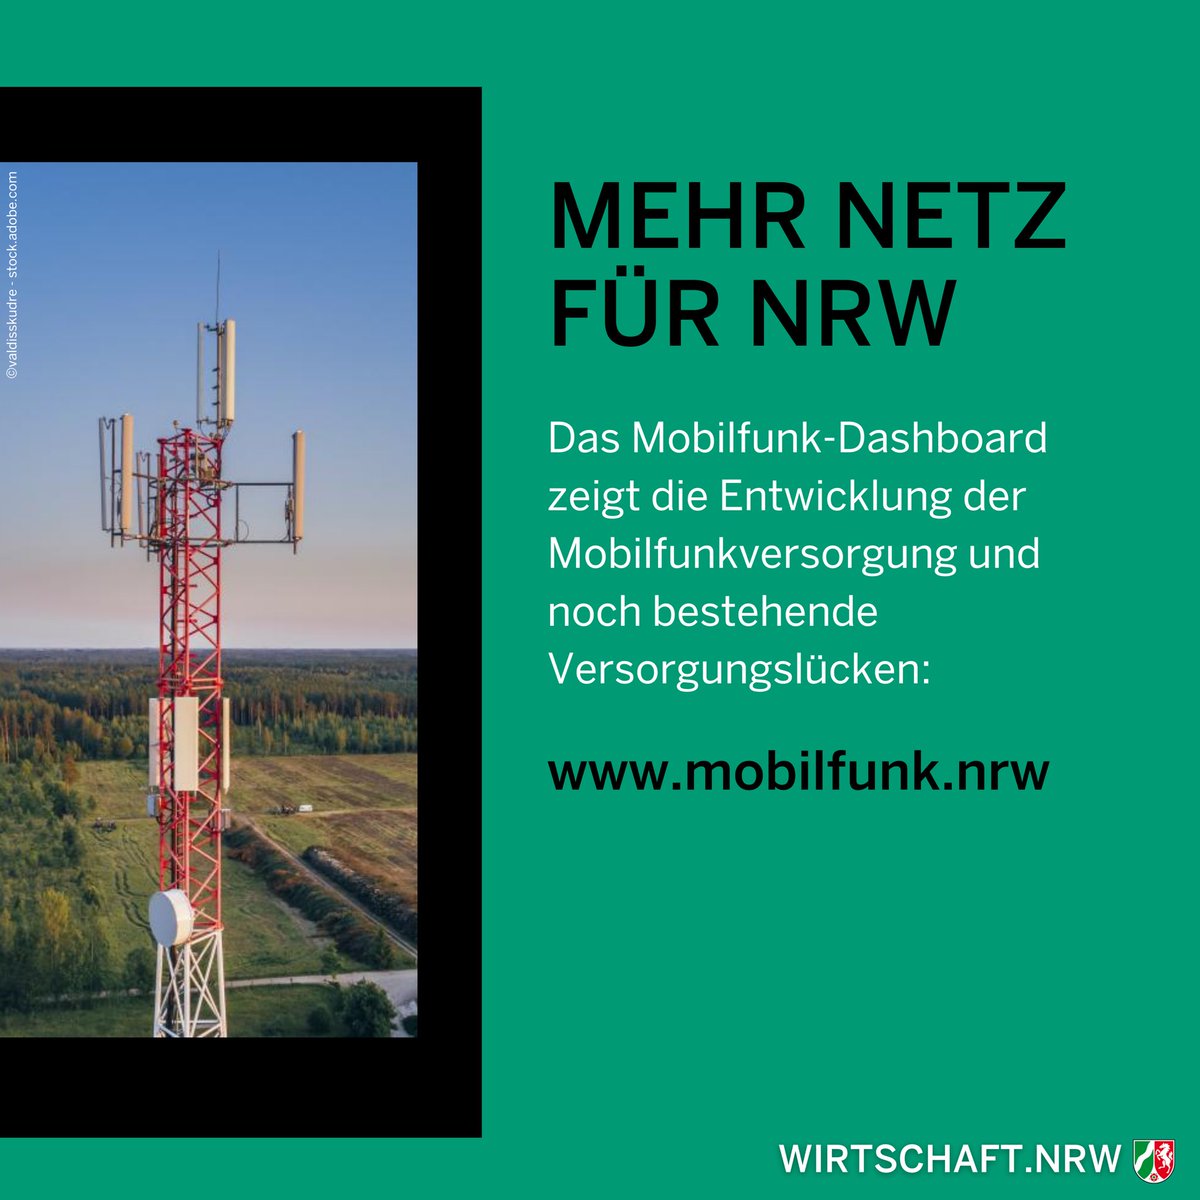 📶 Die Landesregierung bringt den Mobilfunkausbau in #NRW voran! 🌐 Das Dashboard Mobilfunk bietet einen klaren Überblick über die Mobilfunkversorgung und zeigt, wo es noch Versorgungslücken gibt. 📊📱 Die aktuellen Zahlen und mehr Infos gibt’s 👇 & unter mobilfunk.nrw